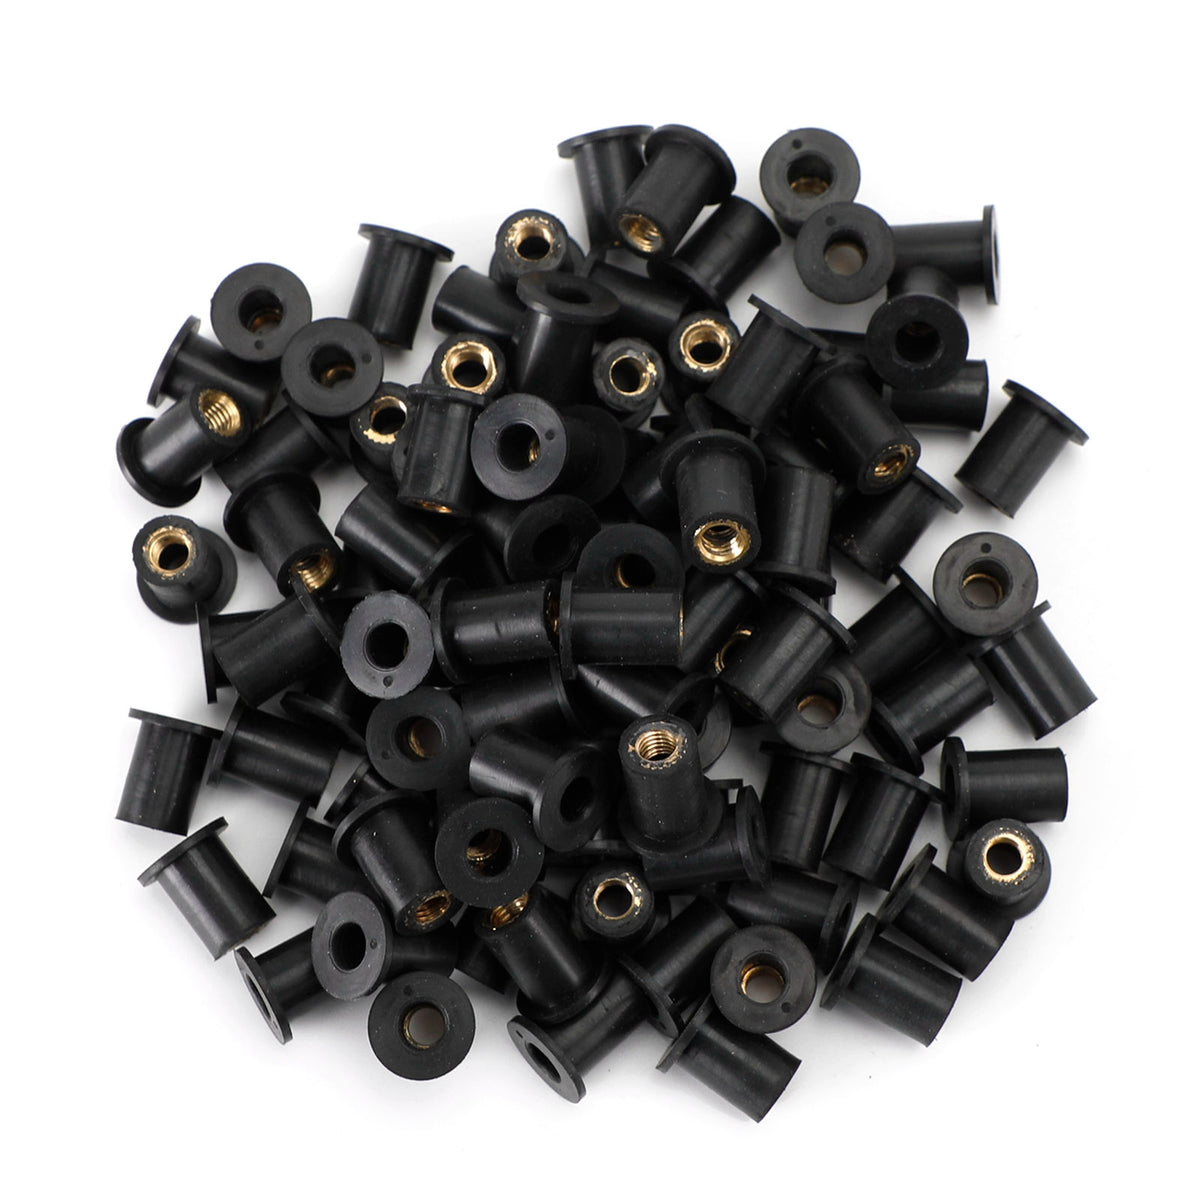 M5 Gummi-Nutmuttern Wellnuts für Verkleidungs- und Bildschirmbefestigung, 100 Stück – 10-mm-Loch